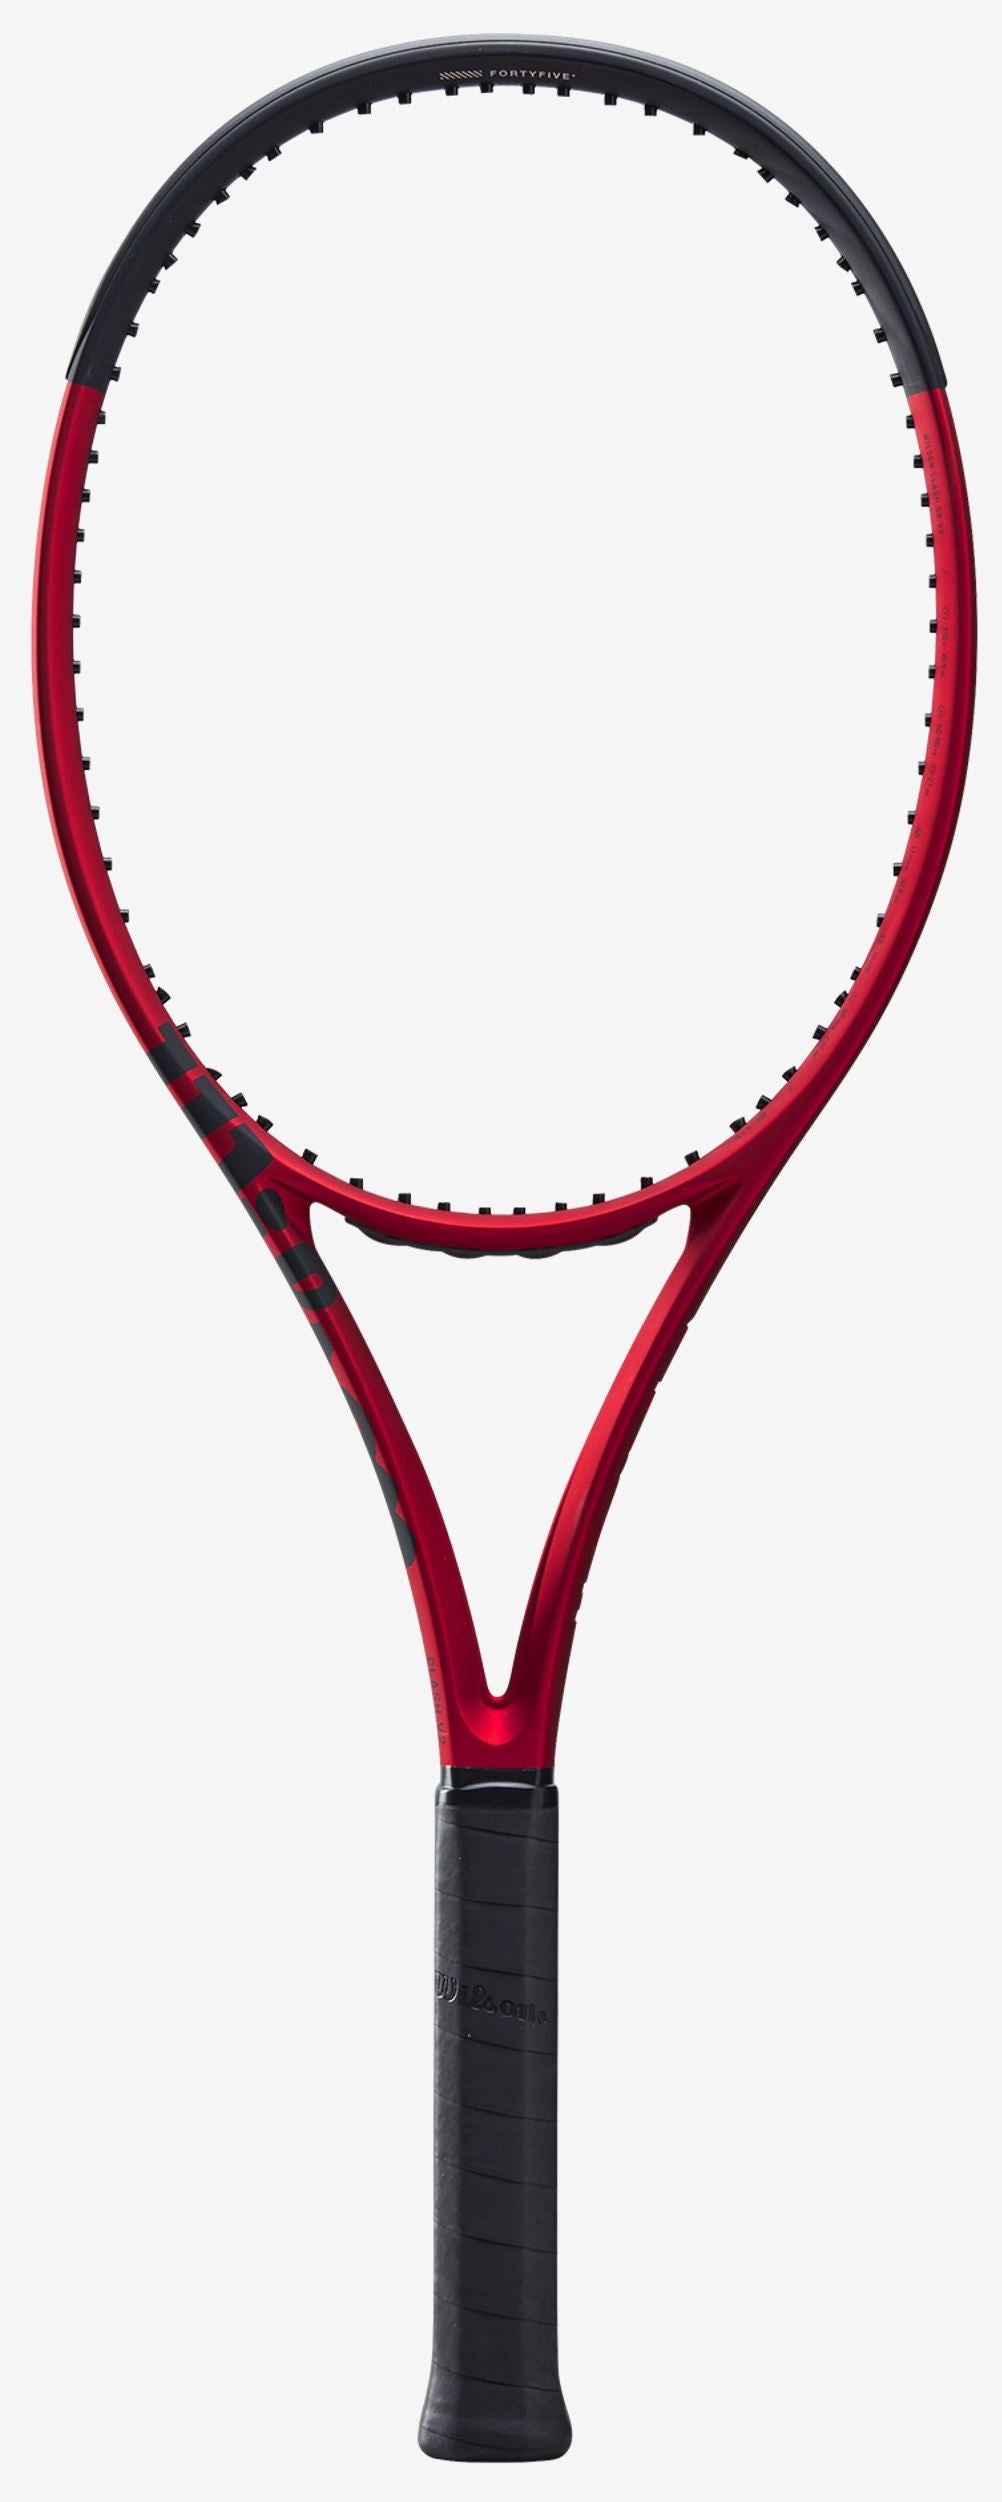 WILSON CLASH 98 V2.0 Tennis Racquet Unstrung Tennis racquets Wilson 